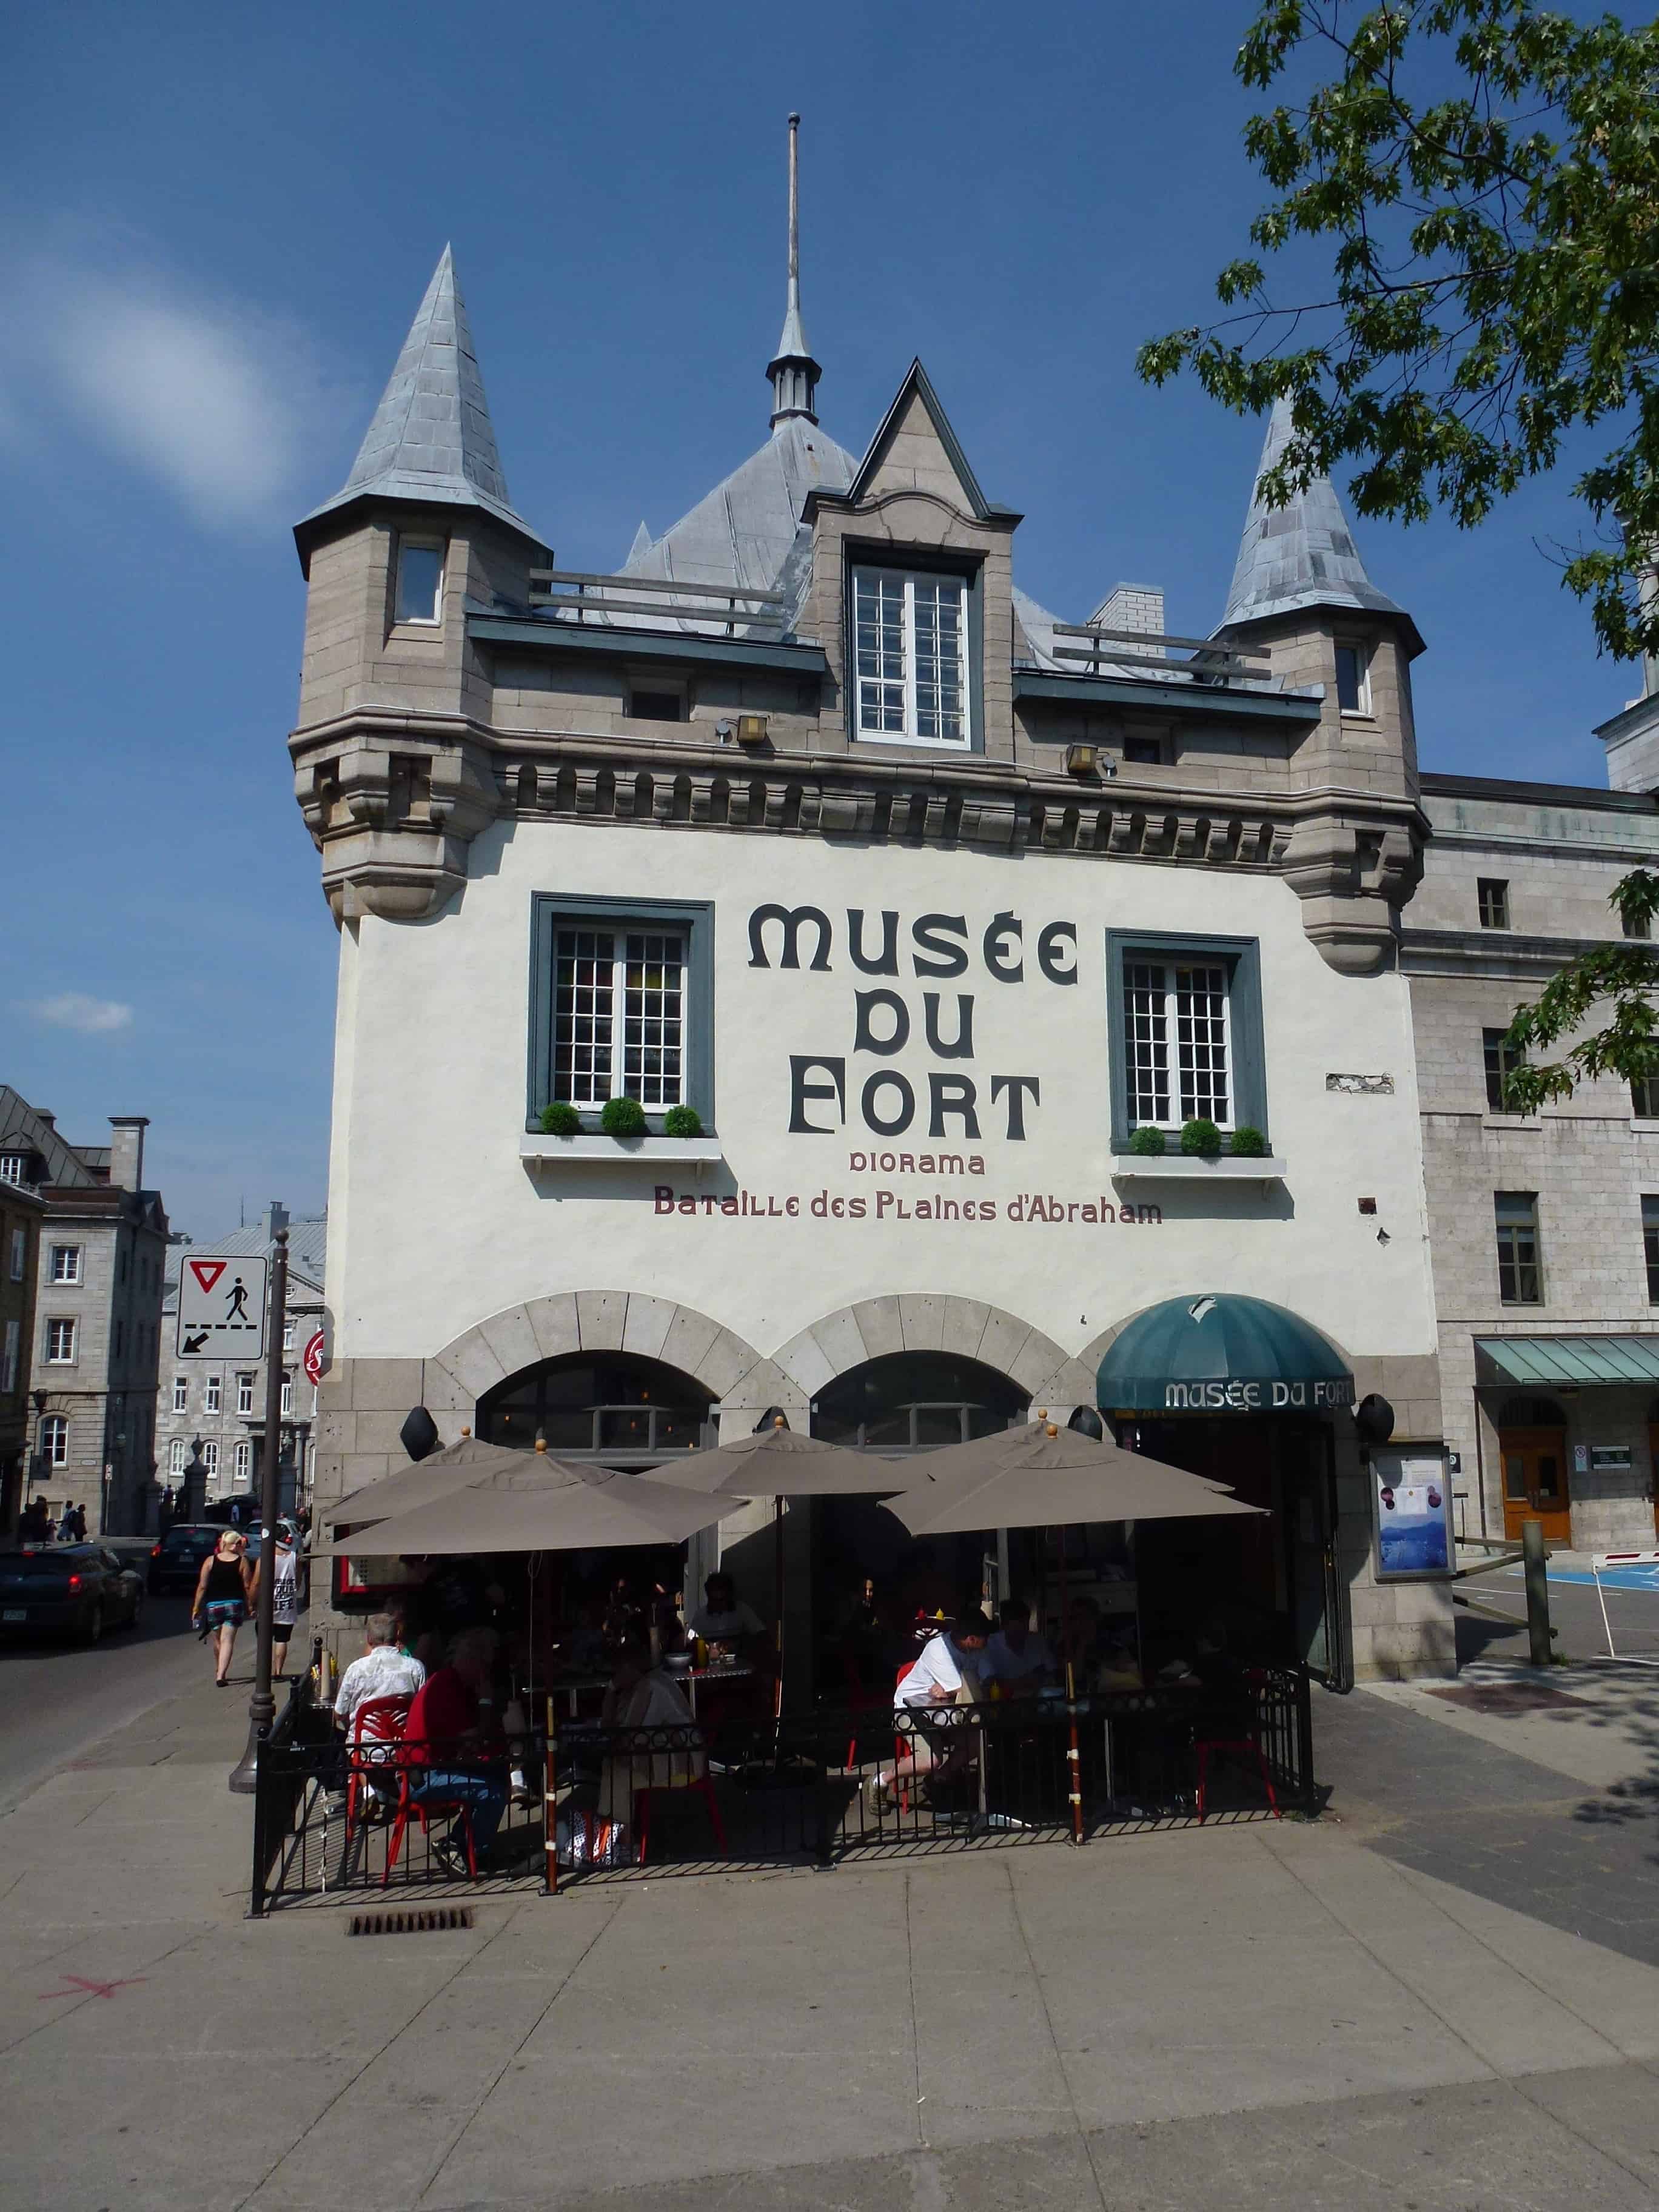 Musée du fort in Québec, Canada